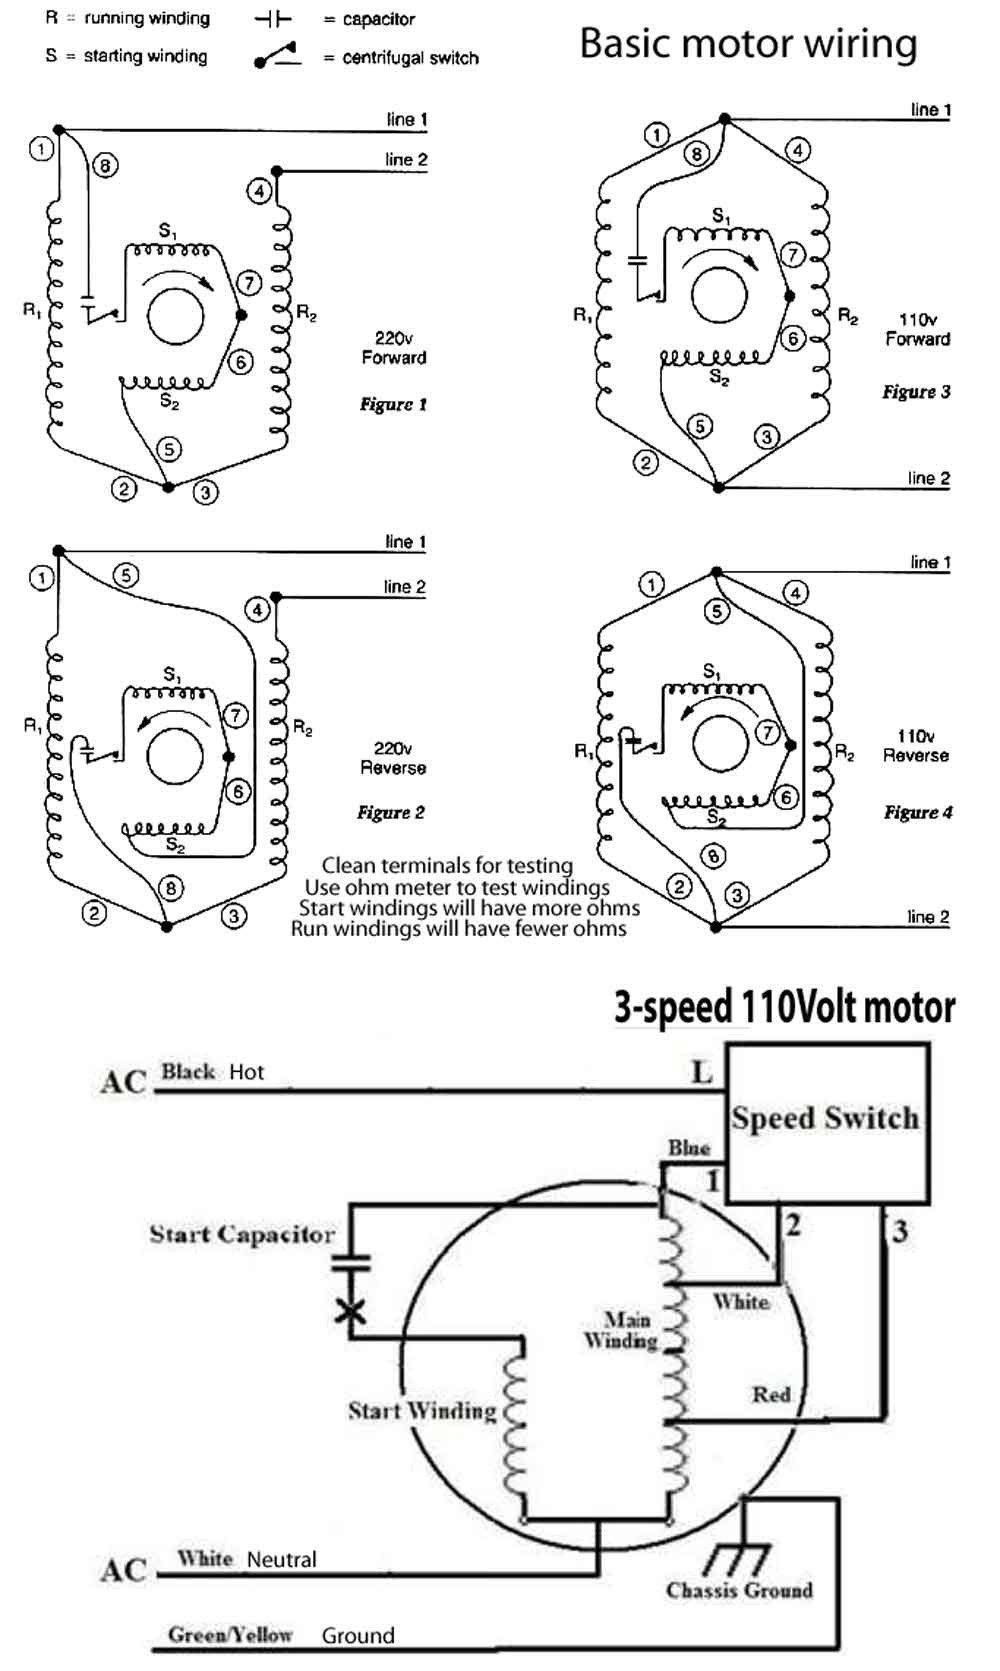 Diagram Century Ac Motor Wiring Diagram Full Hd Version Wiring Diagram Lowe Diagram Jamaisvu Jv It